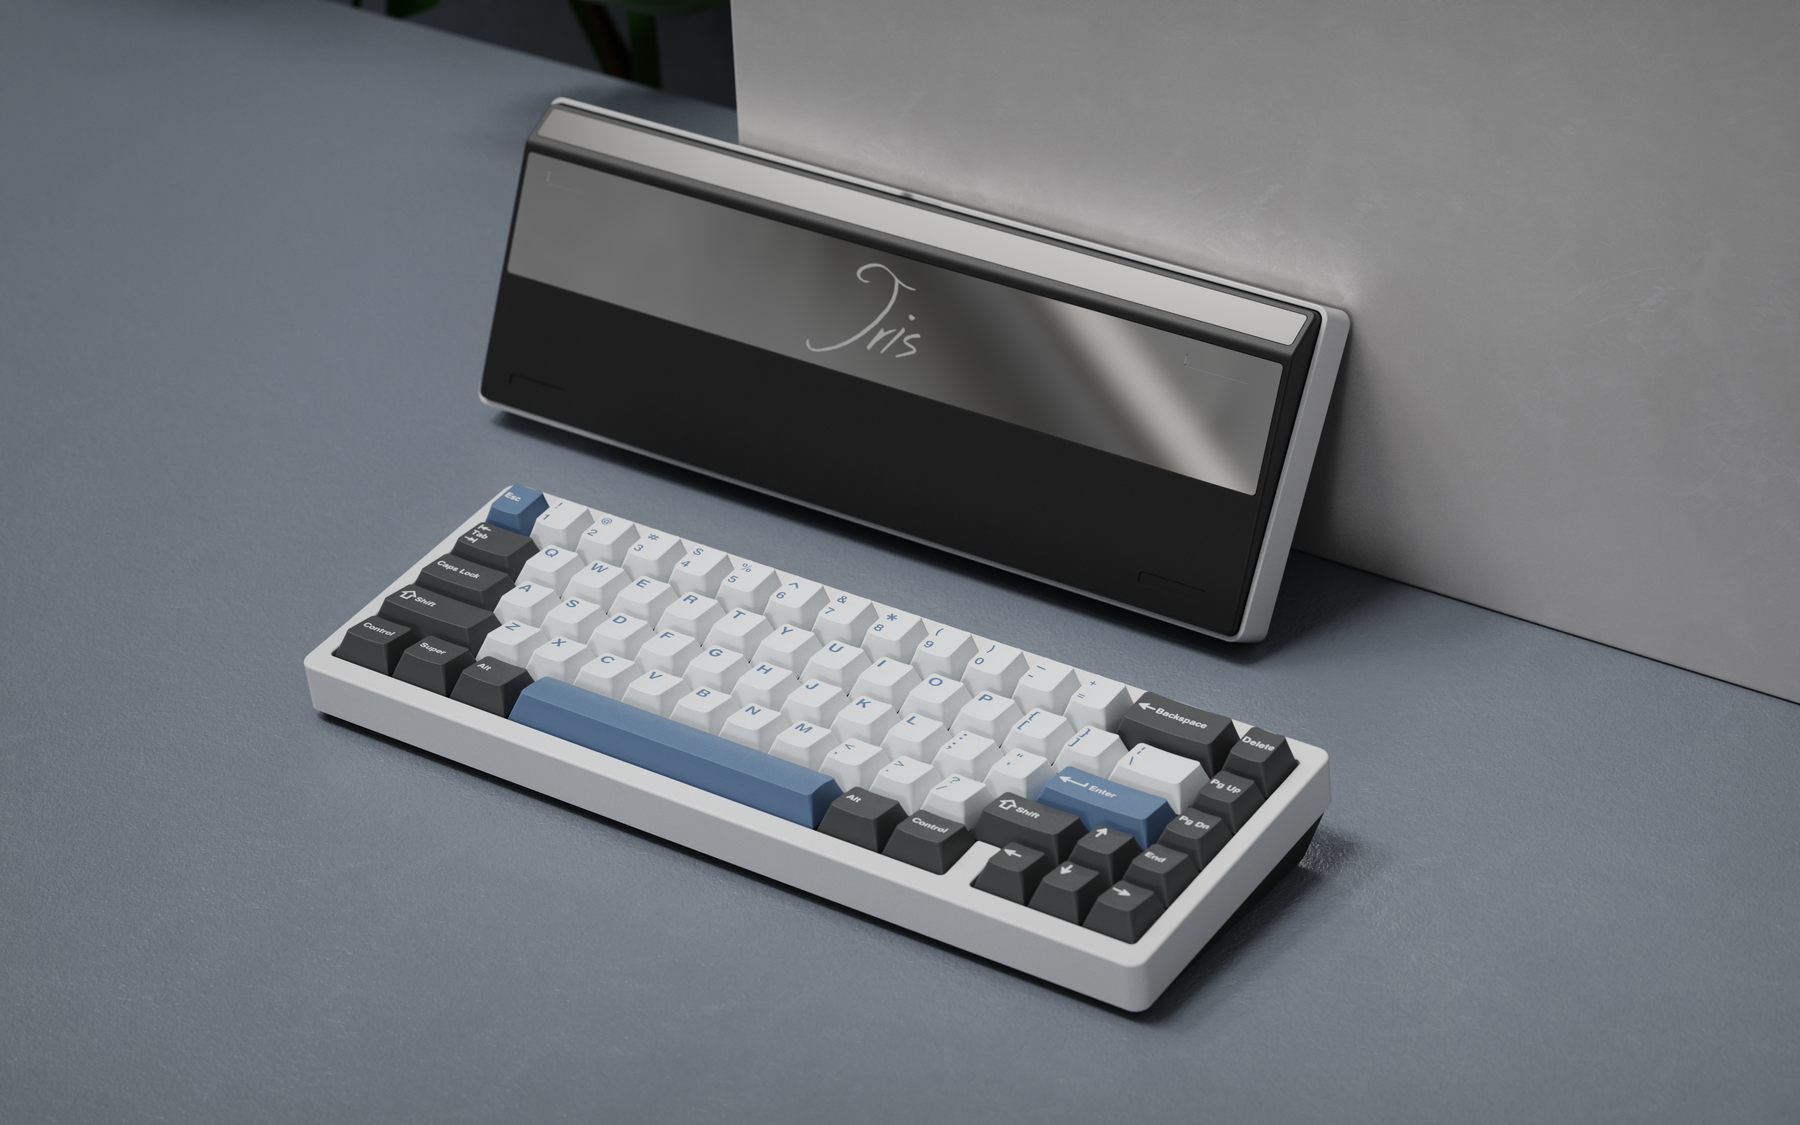 JRIS65 Keyboard Kit - Extra Units